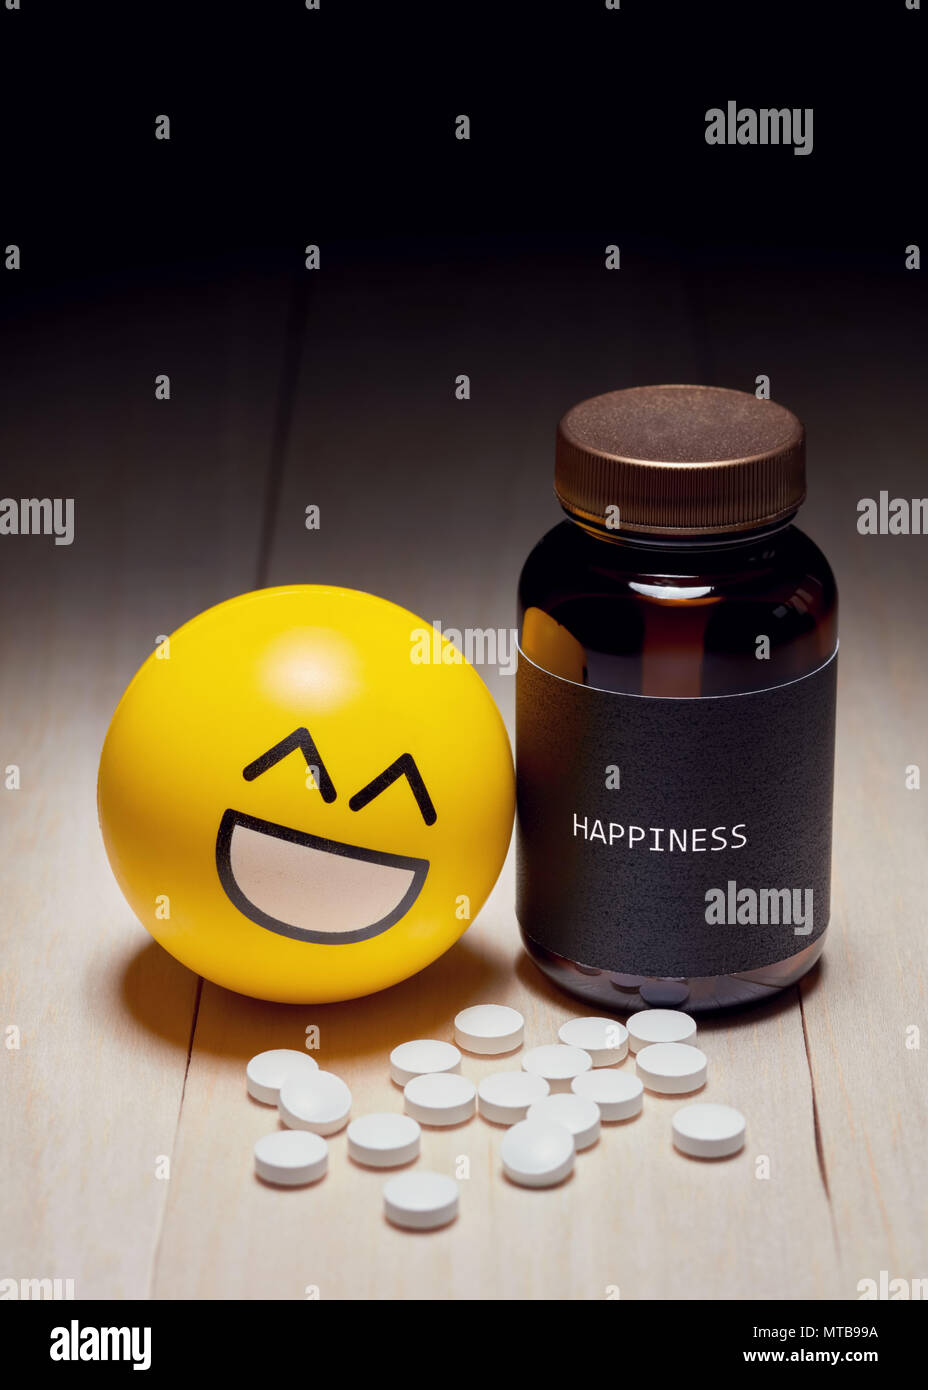 Anti-Depressant Drogenkonsum und Glück Konzept. Gelbe lächeln Emoji legte sich auf ein Medikament Container mit einer Black Label geschrieben Glück auf. Editoria Stockfoto